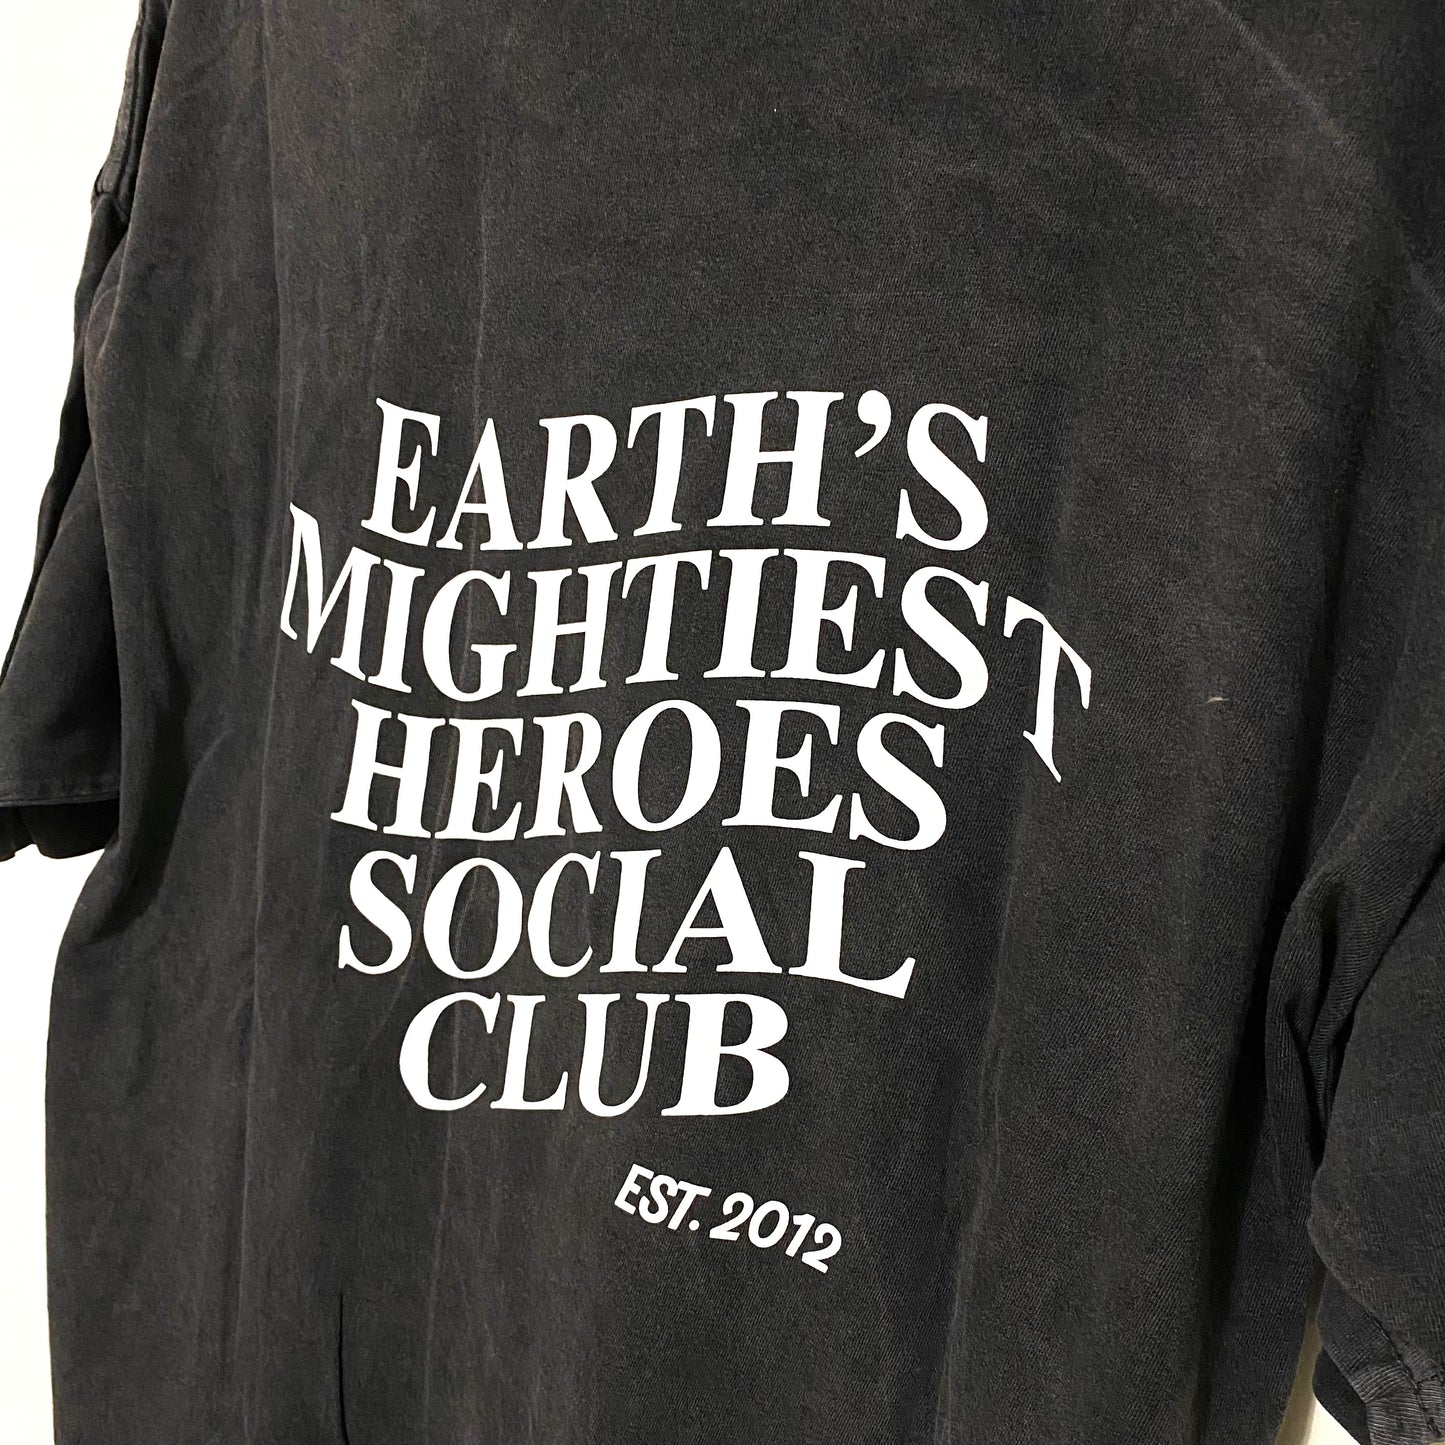 Mightiest Heroes Social Club Tee